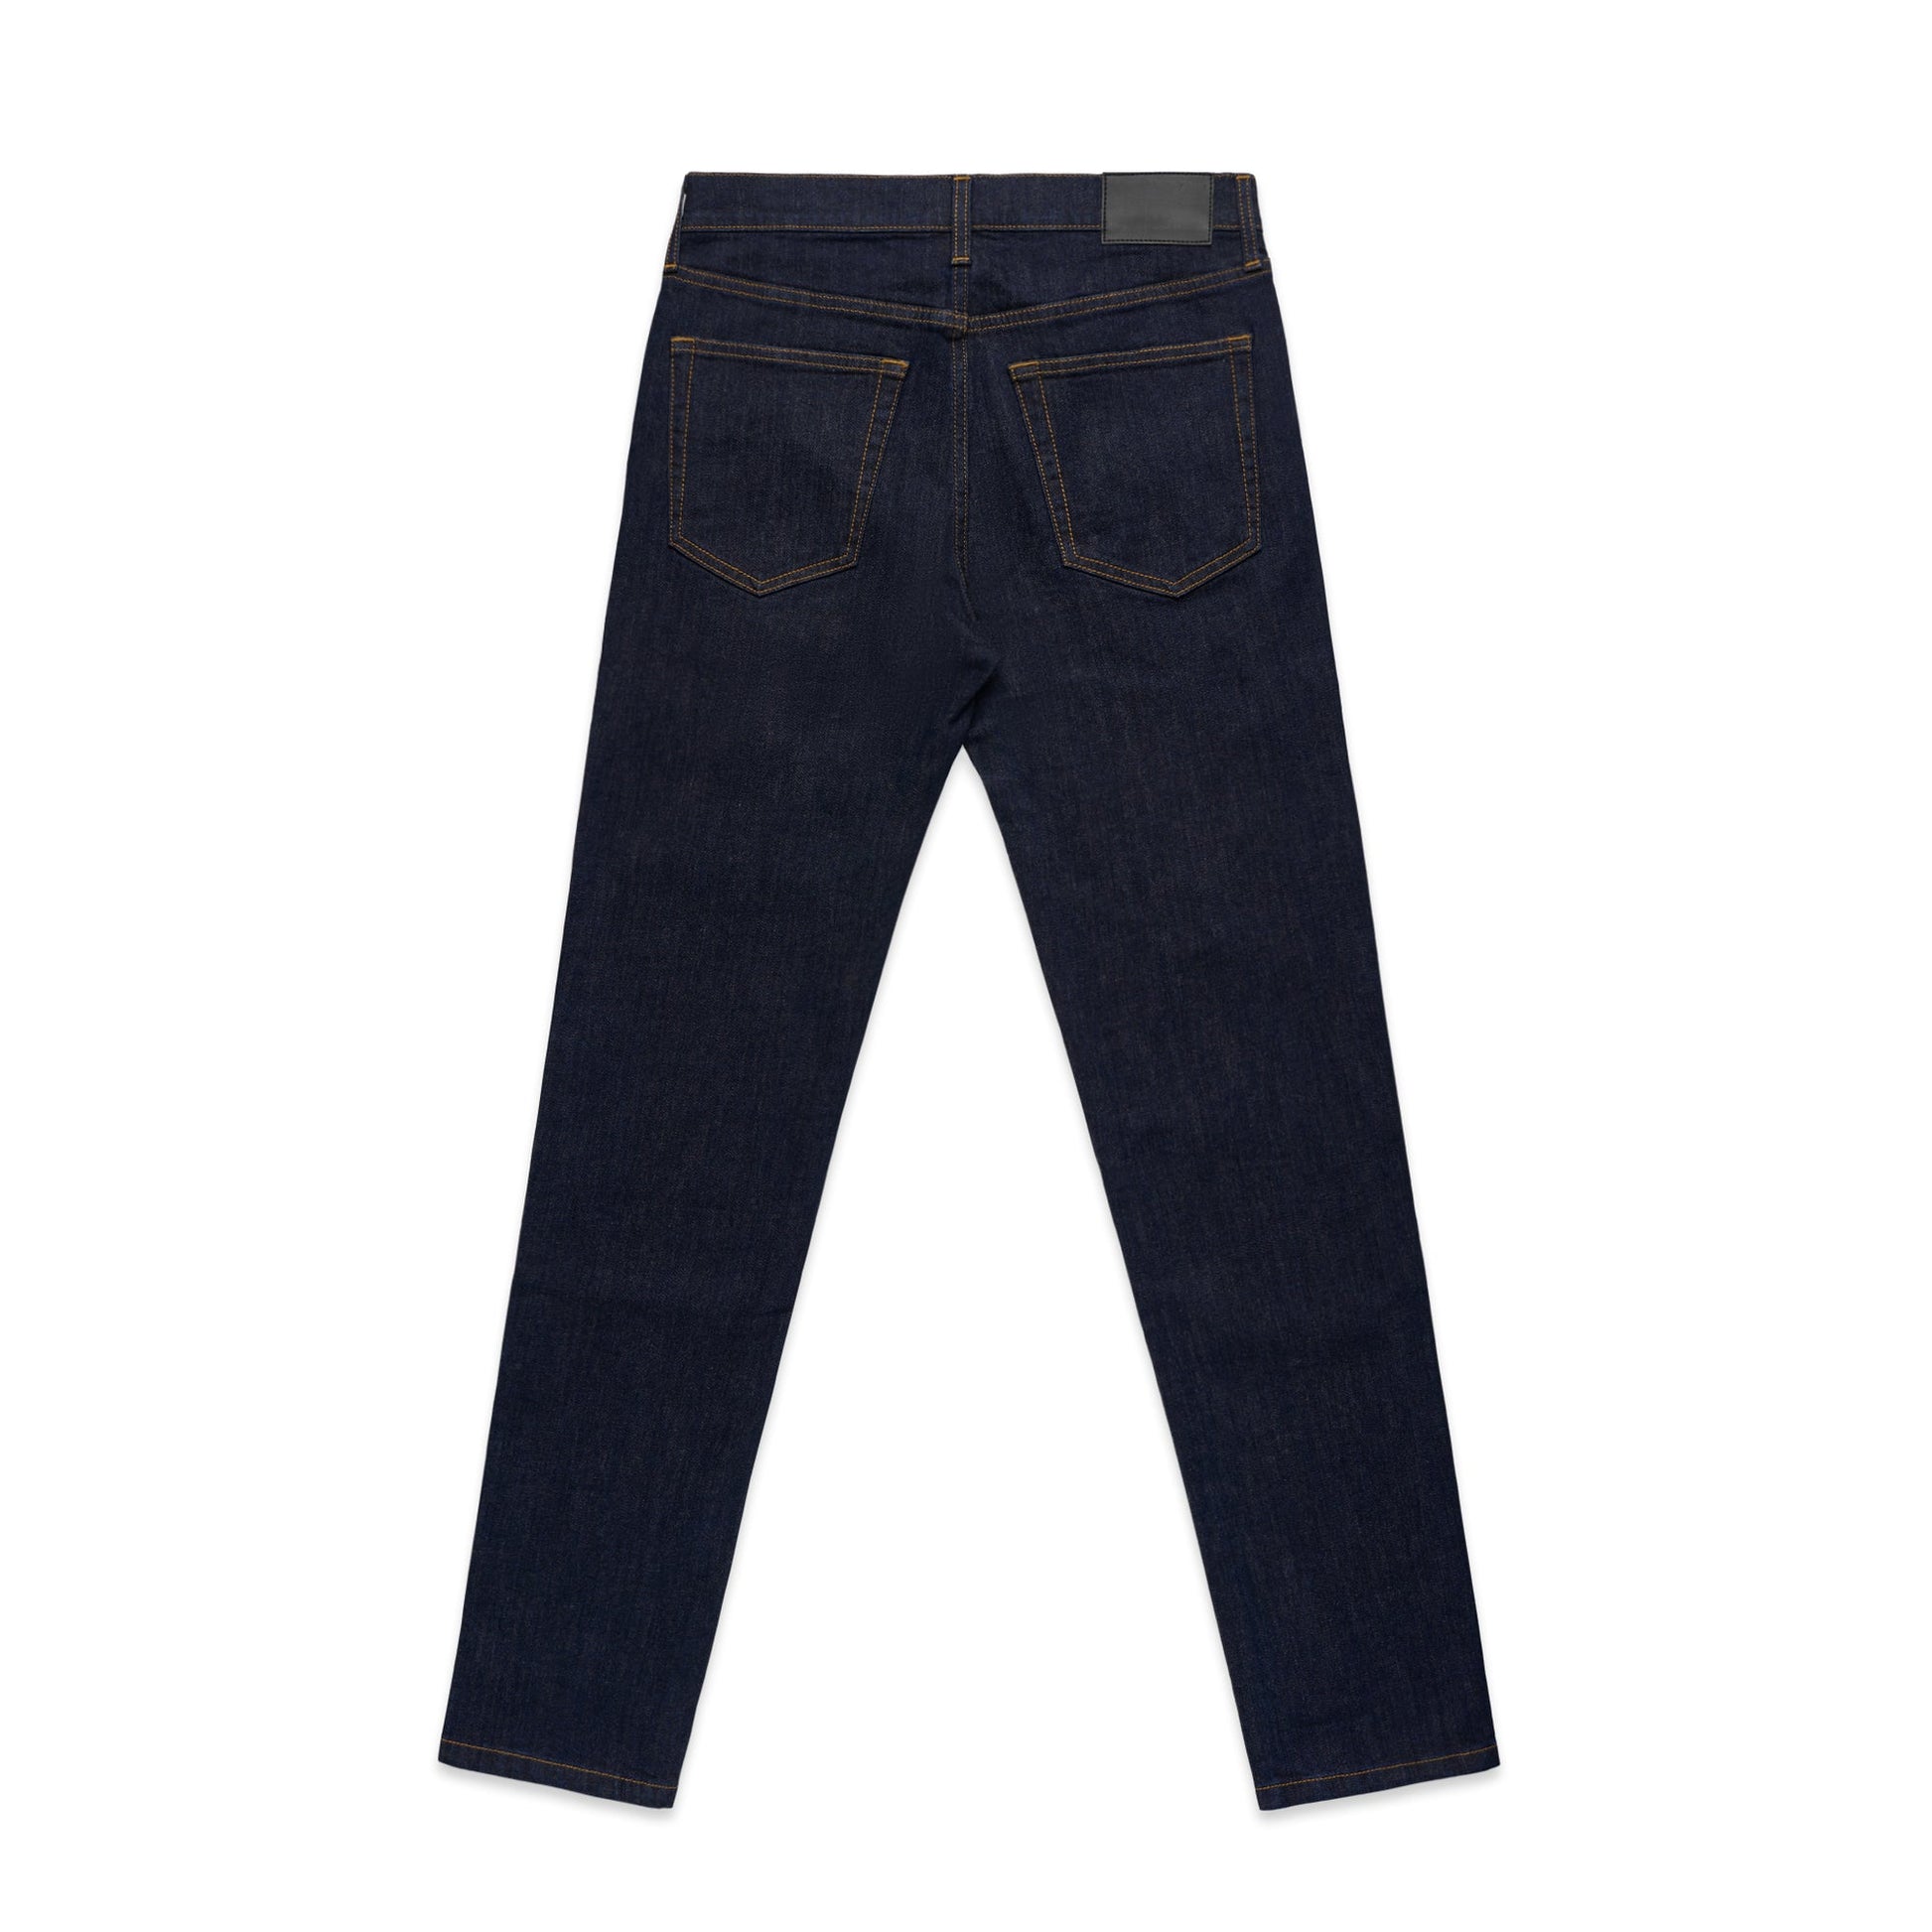 Ascolour Mens Standard Jeans(5801)